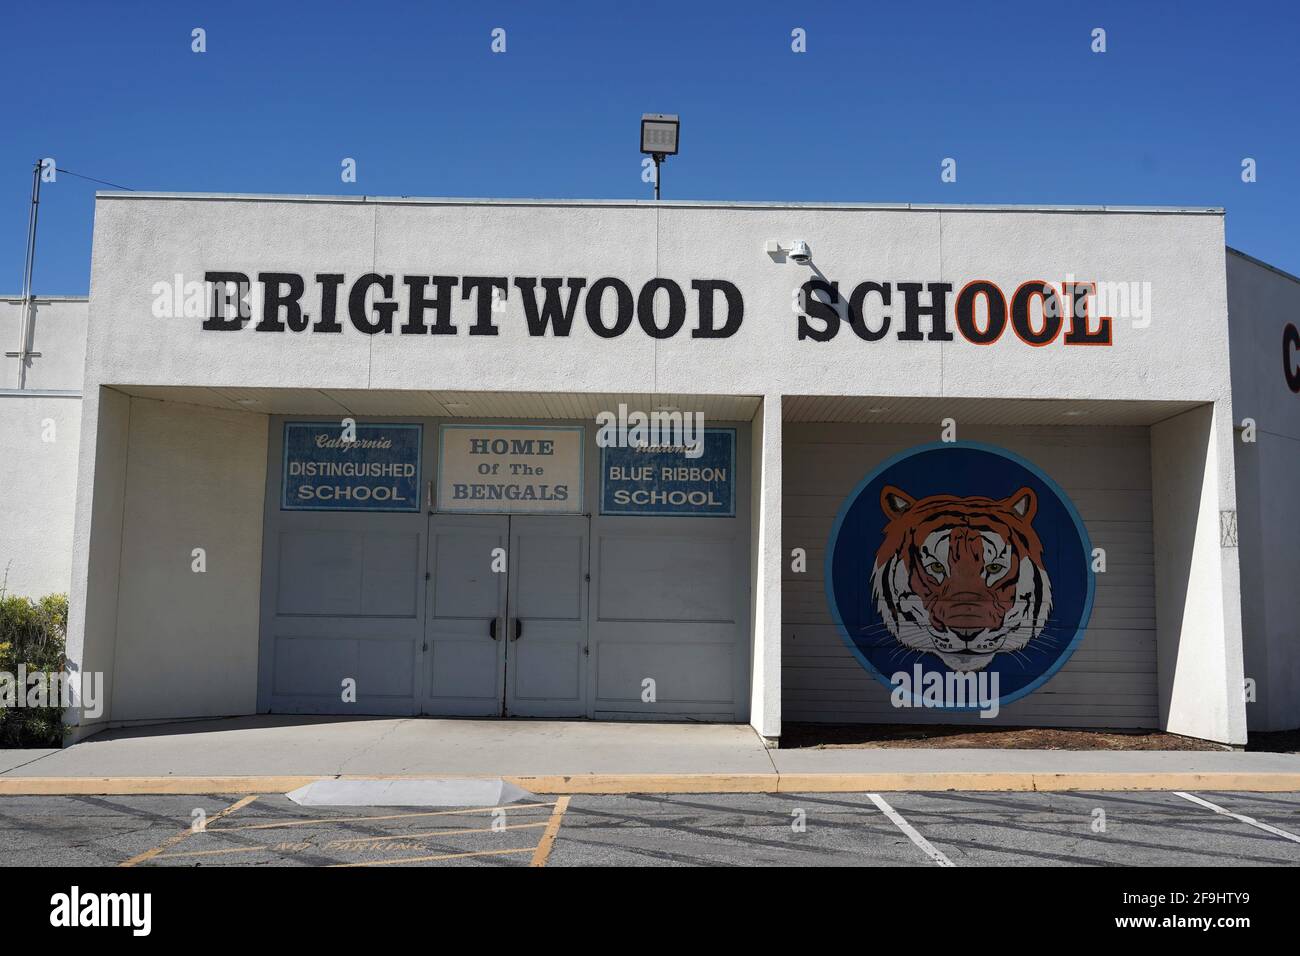 Un aperçu général de l'école élémentaire Brightwood, le dimanche 19 avril 2021, à Monterey Park, Calif. Banque D'Images